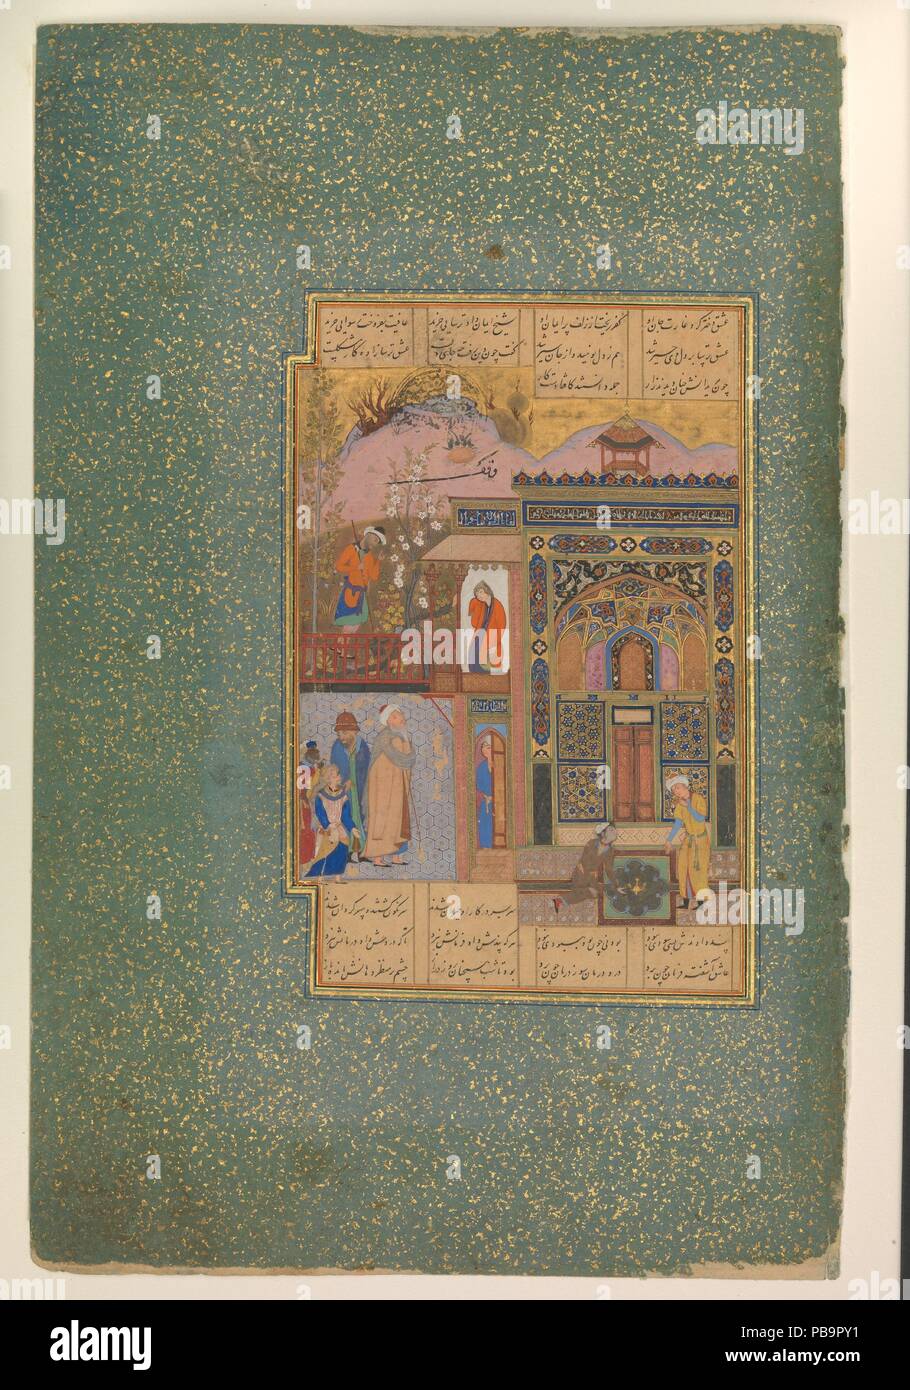 'Shaikh San'an sotto la finestra della fanciulla cristiana", Folio18r da un Mantiq al-tair (lingua degli uccelli). Autore: Farid al-Din 'Attar (ca. 1142-1220). Calligrapher: Sultan 'Ali Mashhadi (ca.1440-1520). Dimensioni: Pittura: H. 2 7/8 in. (7.4 cm) W. 4 1/2 in. (11,4 cm) Pagina: H. 13 a. (33 cm) W. 8 1/2 in. (21,6 cm) tappeto: H. 19 1/4 in. (48,9 cm) W. 14 1/4 in. (36,2 cm). Data: ca. 1600. Questo Safavid illustrazione raffigura la scena di una famosa storia di Shaikh San'an che è spesso illustrato in altri manoscritti del Mantiq al-Tayr. La storia è come segue: un celebrato shaikh Foto Stock